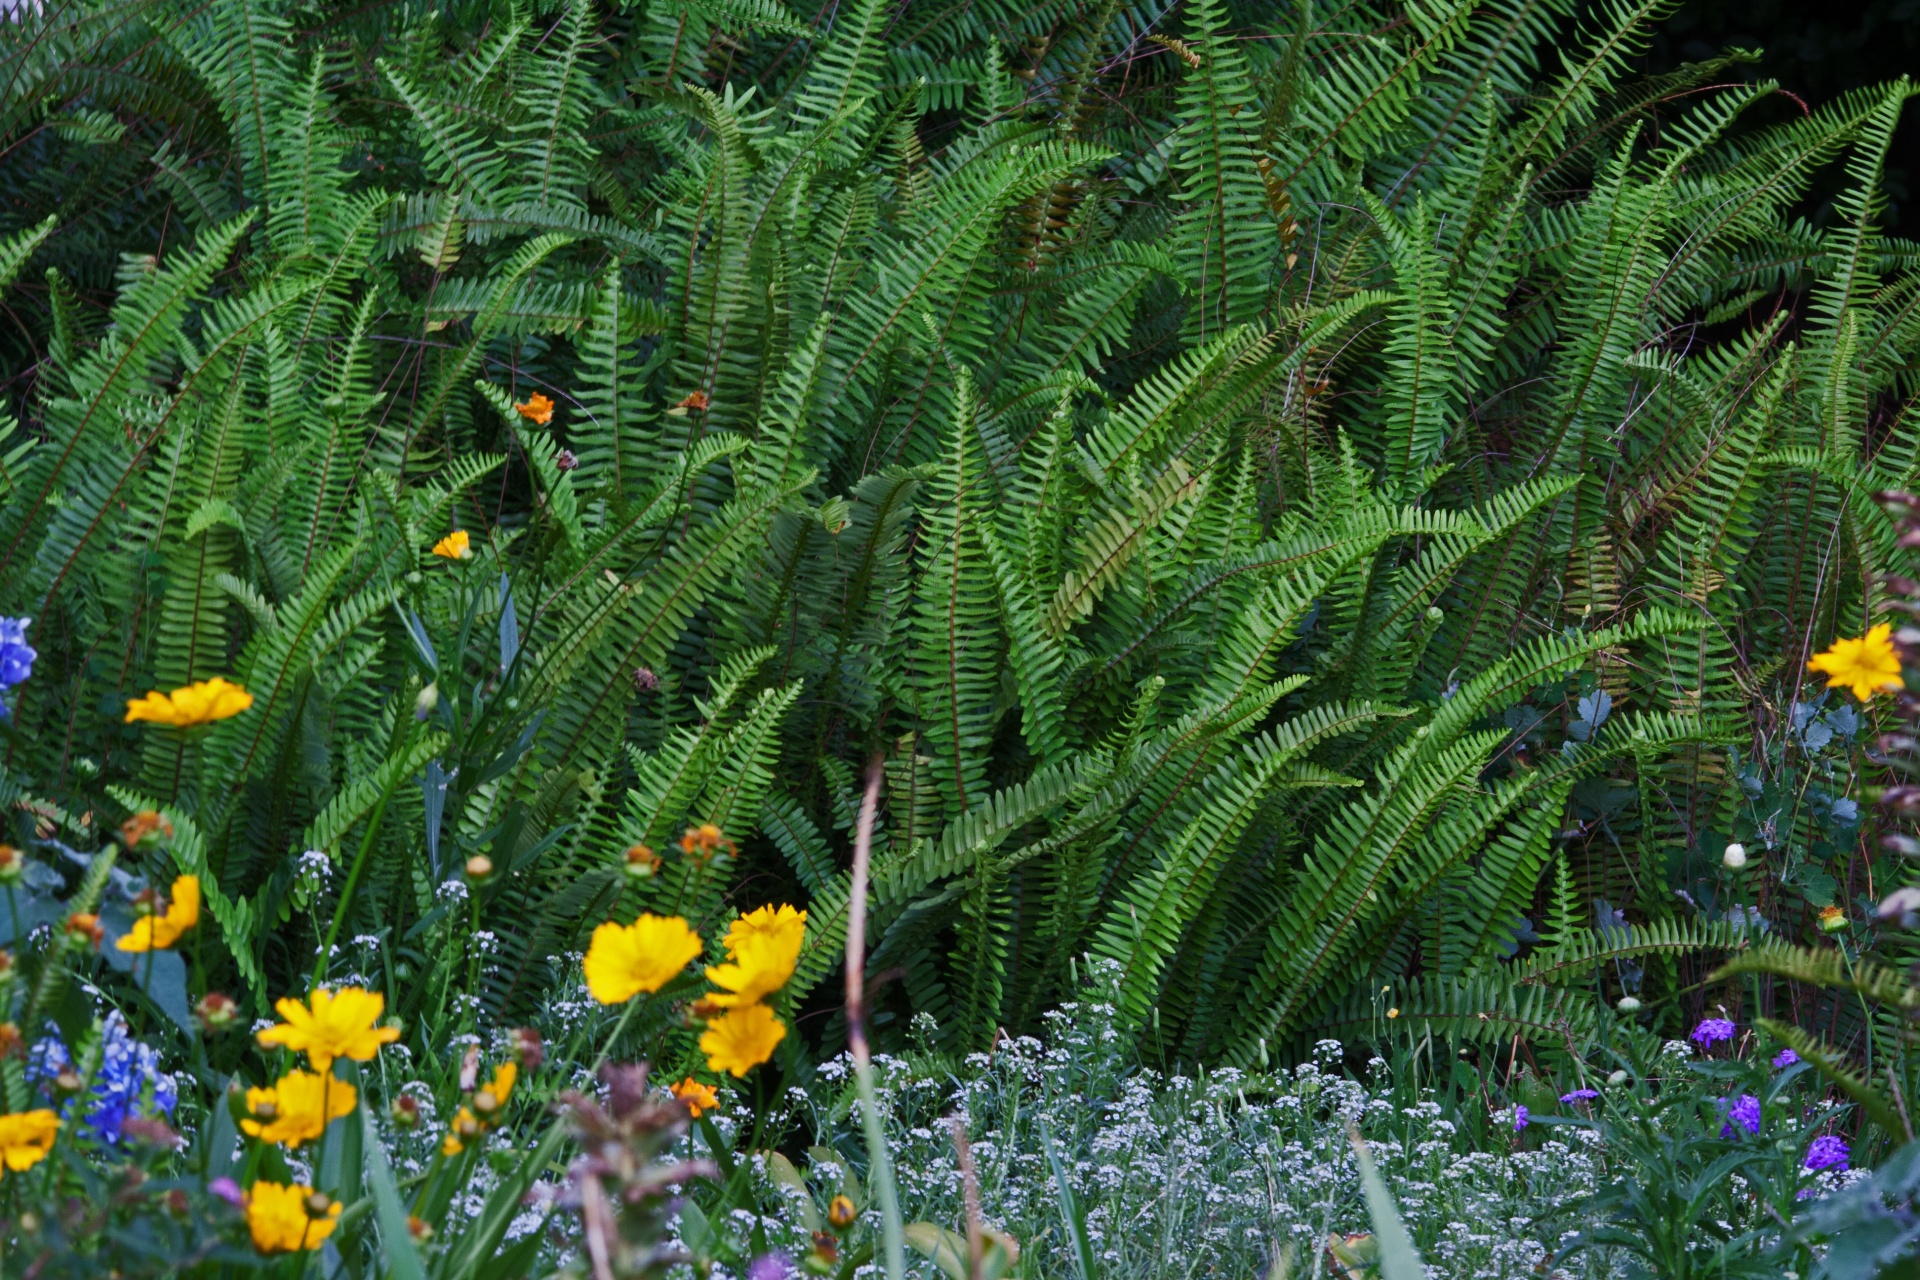 Ferns In A Garden